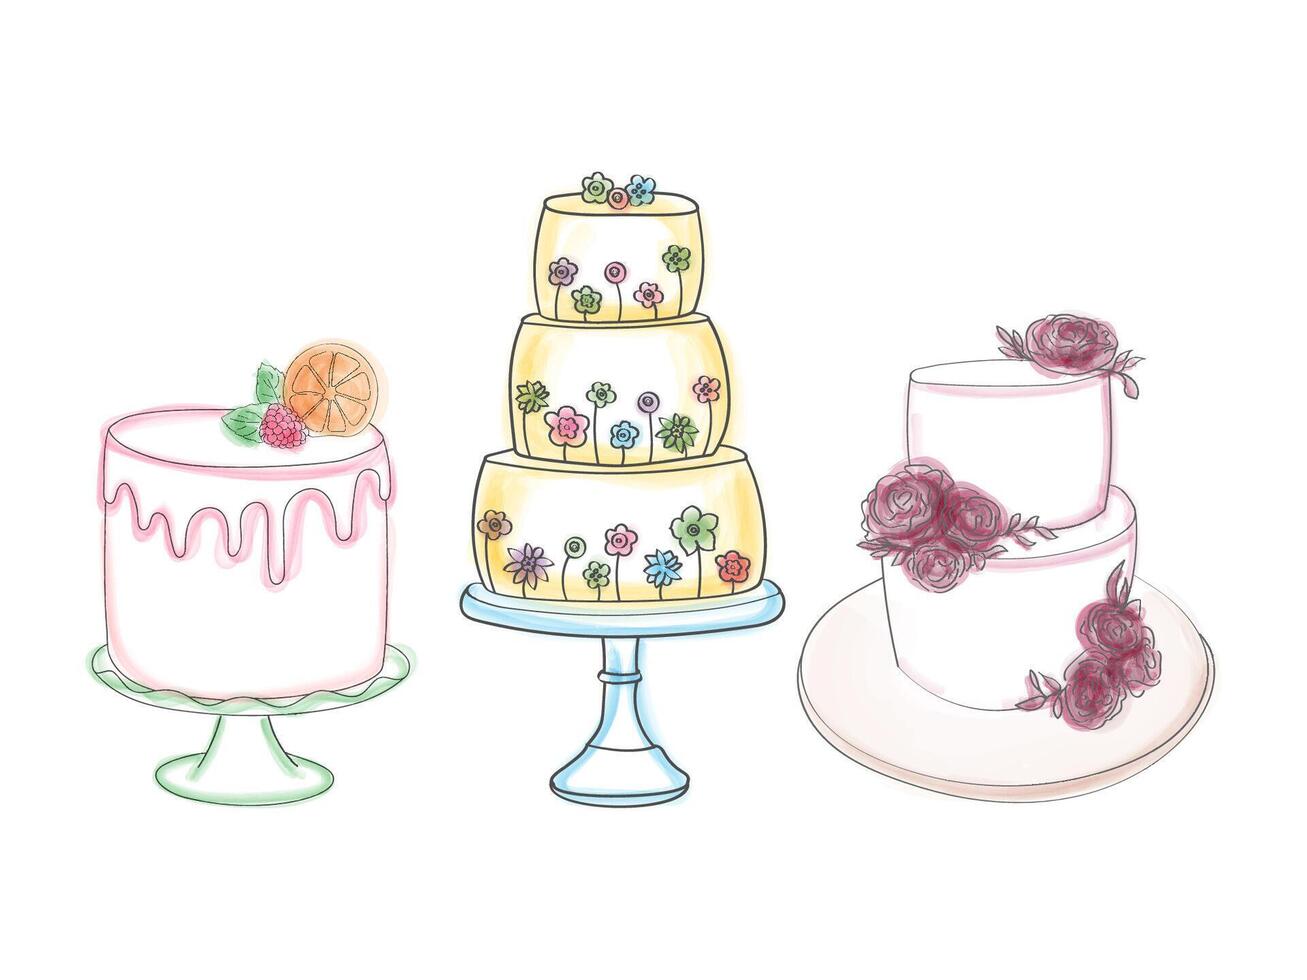 el dibujo representa Tres distinto tipos de pasteles, exhibiendo el variedad en diseño, forma, y decoraciones cada pastel es únicamente presentado, destacando su diferencias en estilo y sabor vector